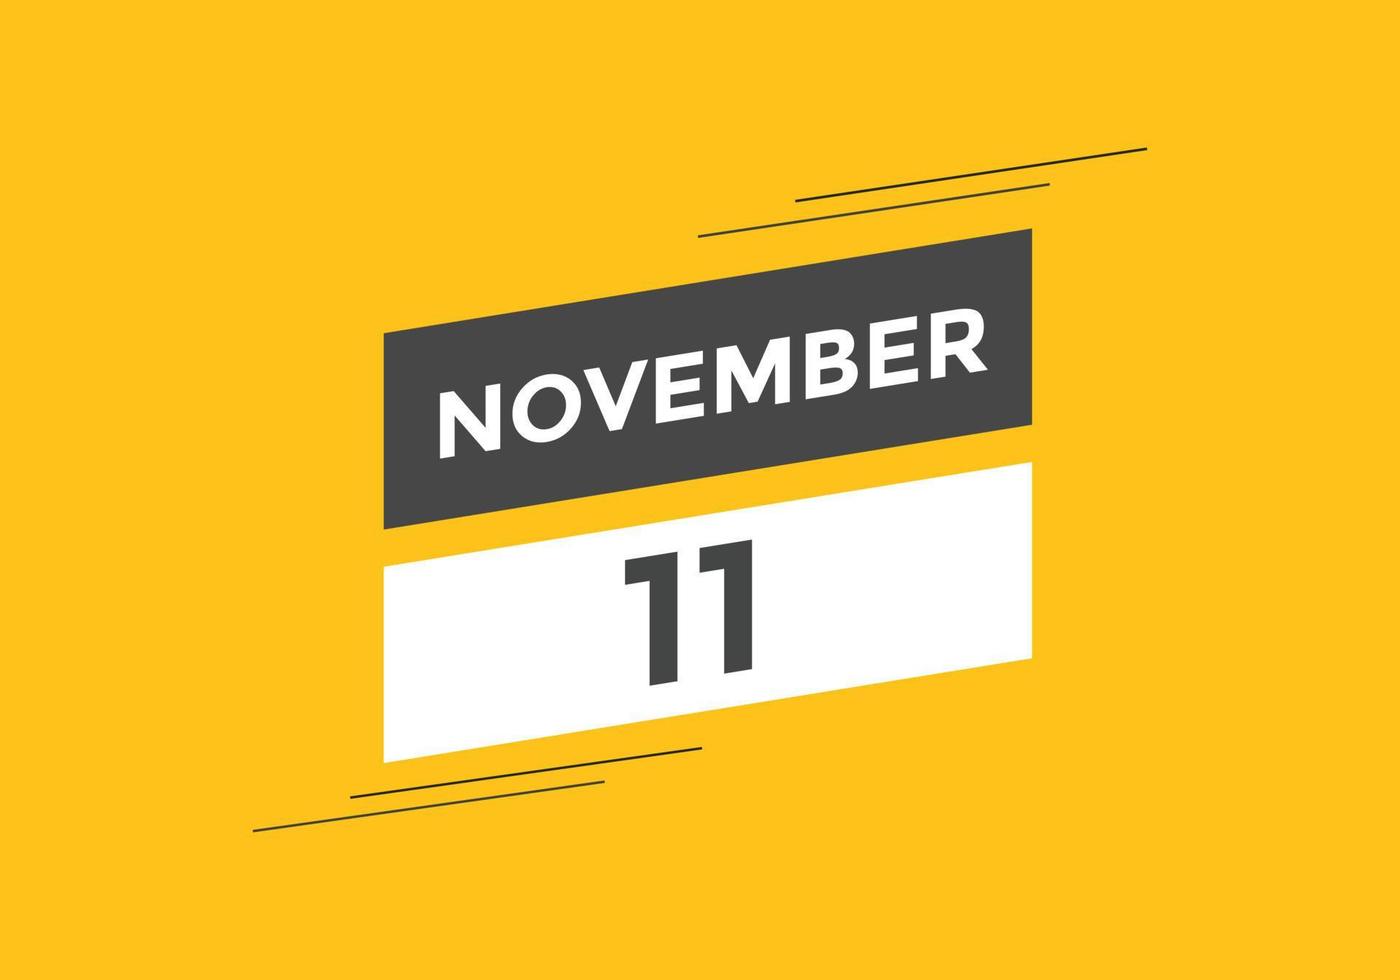 Recordatorio del calendario del 11 de noviembre. Plantilla de icono de calendario diario del 11 de noviembre. plantilla de diseño de icono de calendario 11 de noviembre. ilustración vectorial vector